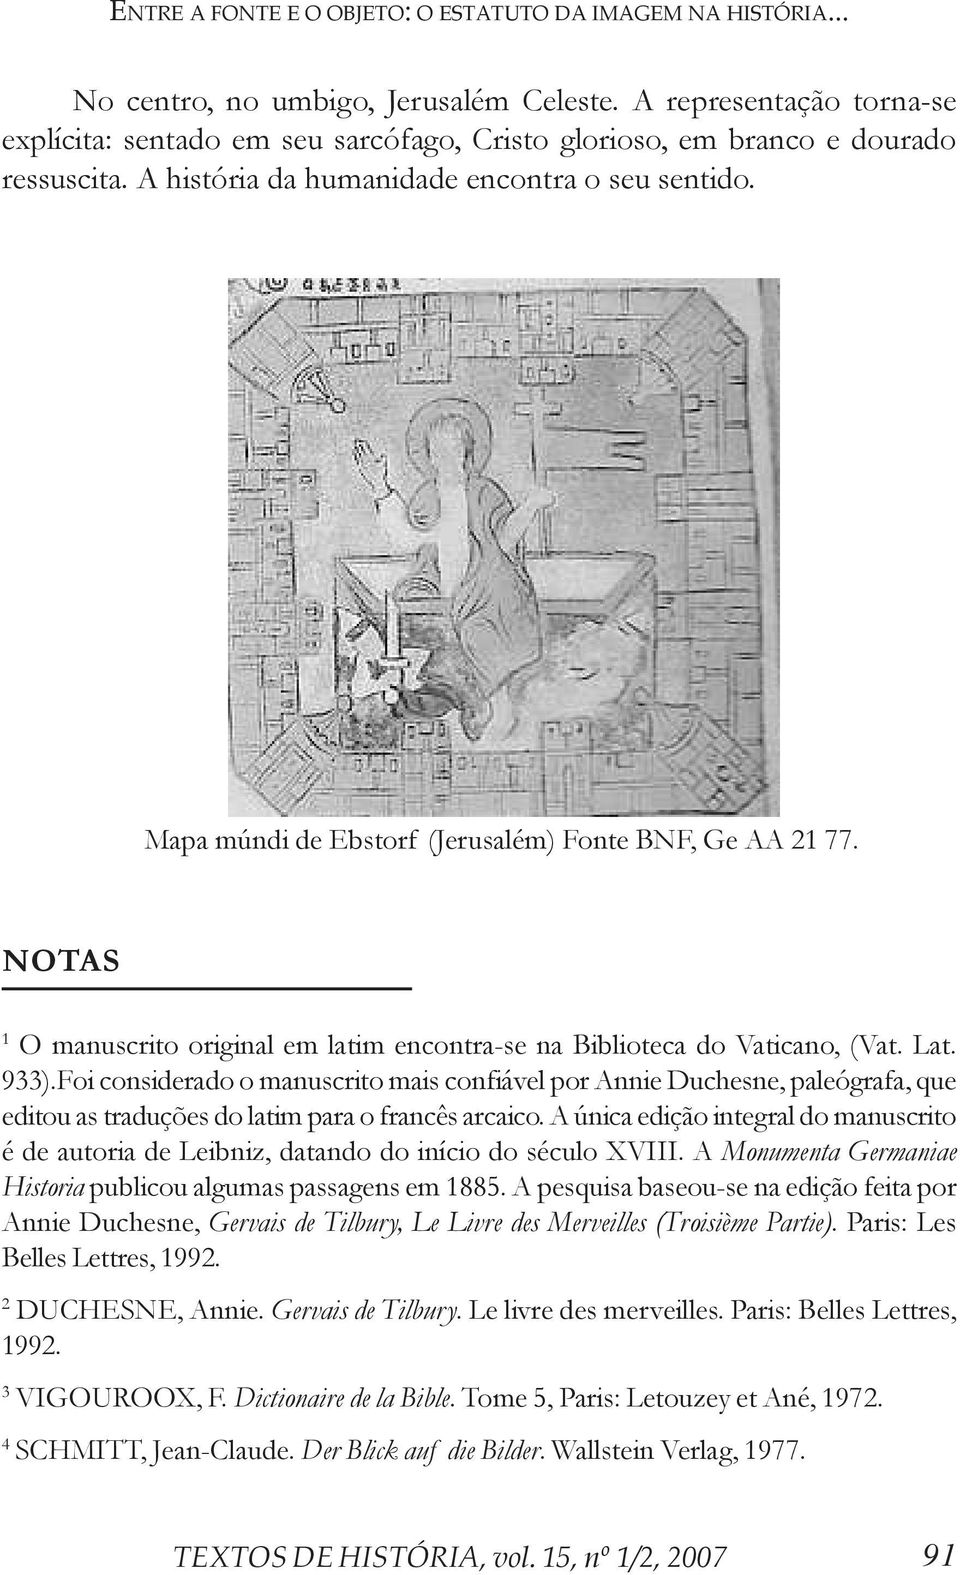 Mapa múndi de Ebstorf (Jerusalém) Fonte BNF, Ge AA 21 77. NOTAS 1 O manuscrito original em latim encontra-se na Biblioteca do Vaticano, (Vat. Lat. 933).